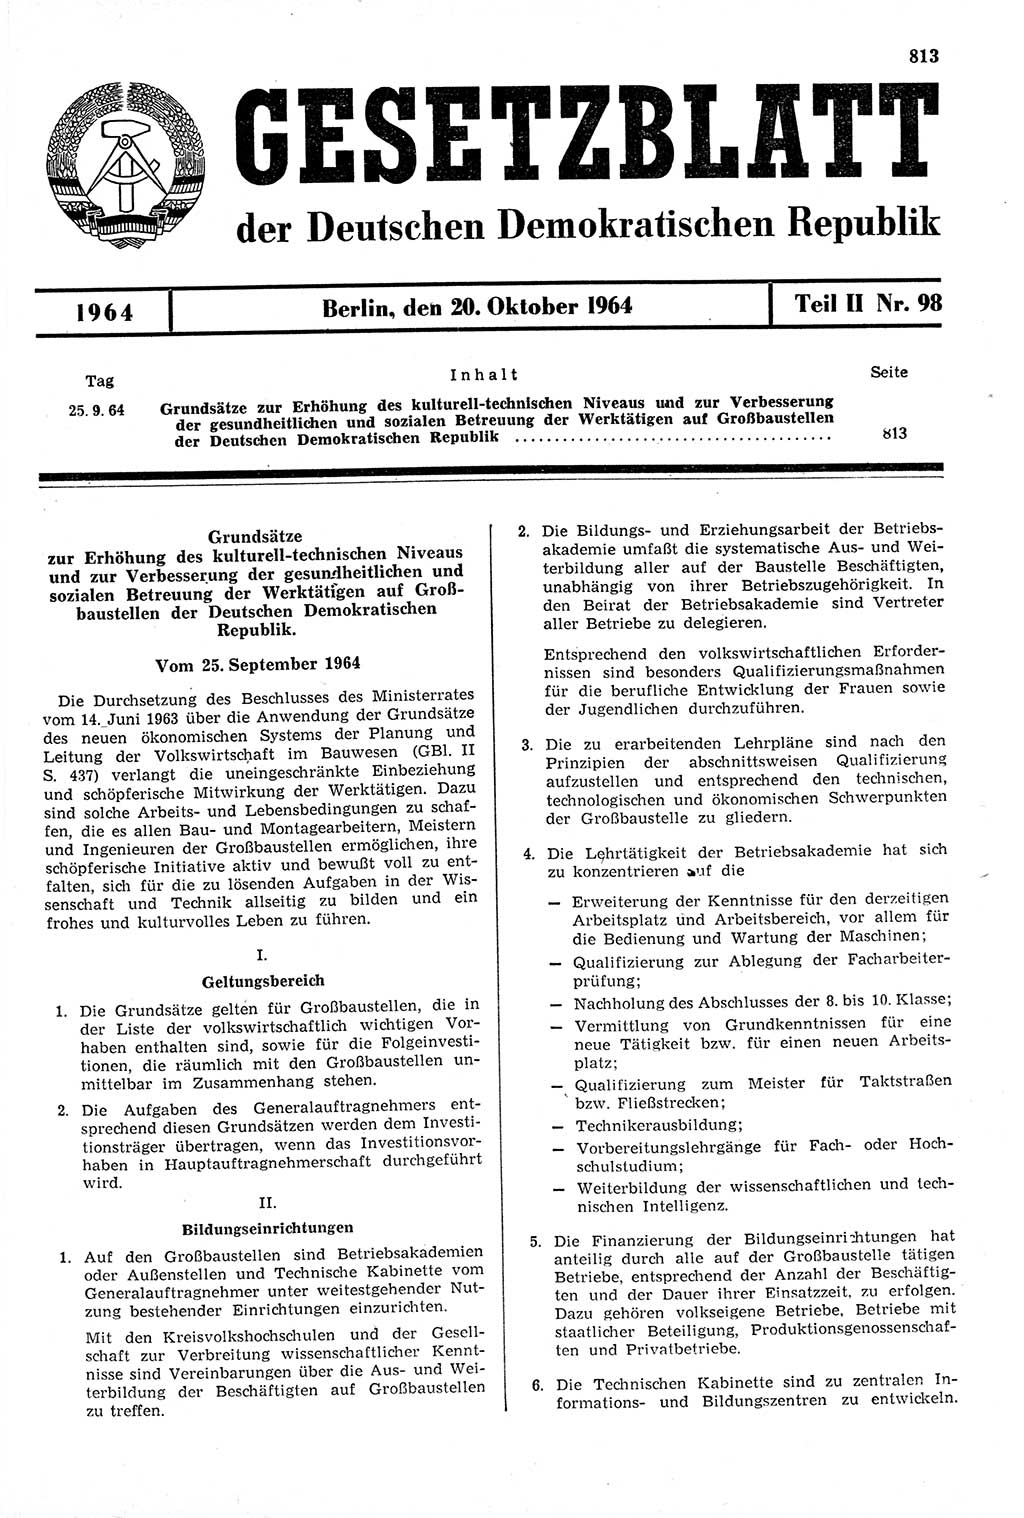 Gesetzblatt (GBl.) der Deutschen Demokratischen Republik (DDR) Teil ⅠⅠ 1964, Seite 813 (GBl. DDR ⅠⅠ 1964, S. 813)